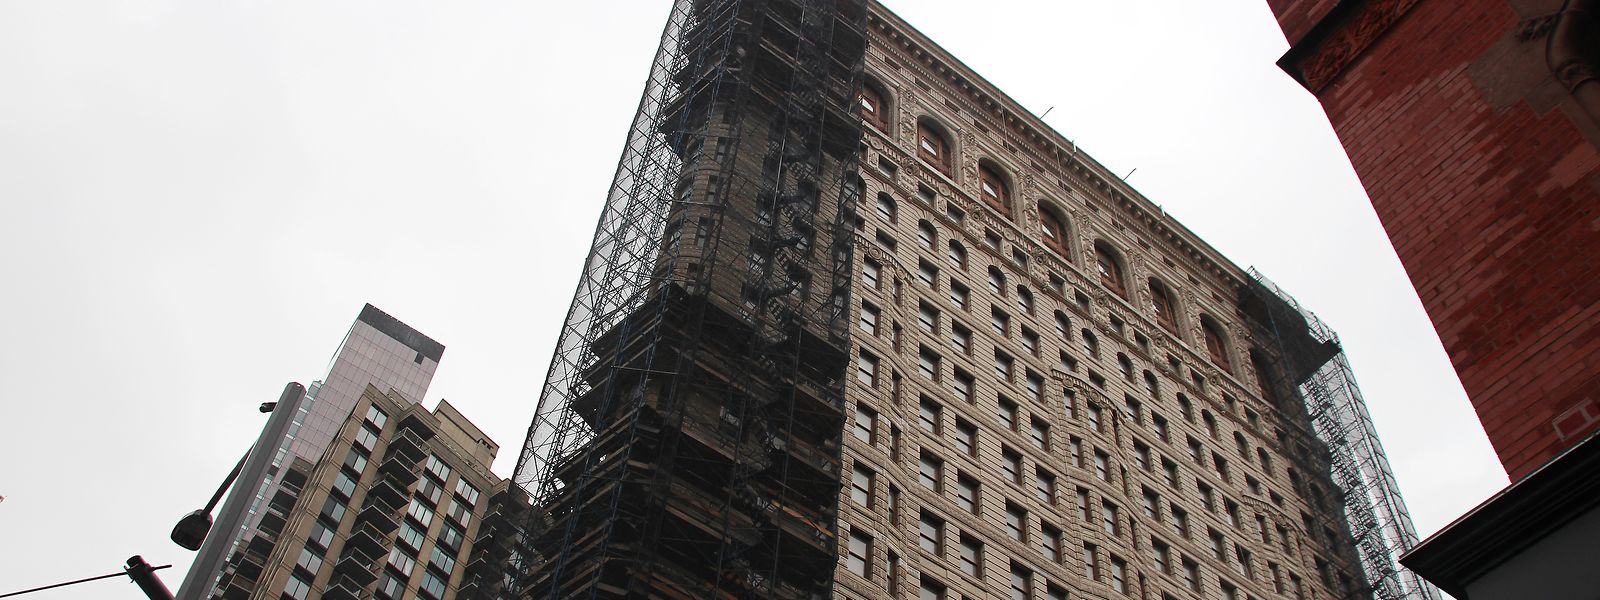 Das teilweise eingerüstete Flatiron Building in dem nach ihm benannten Flatiron District von Manhattan. 